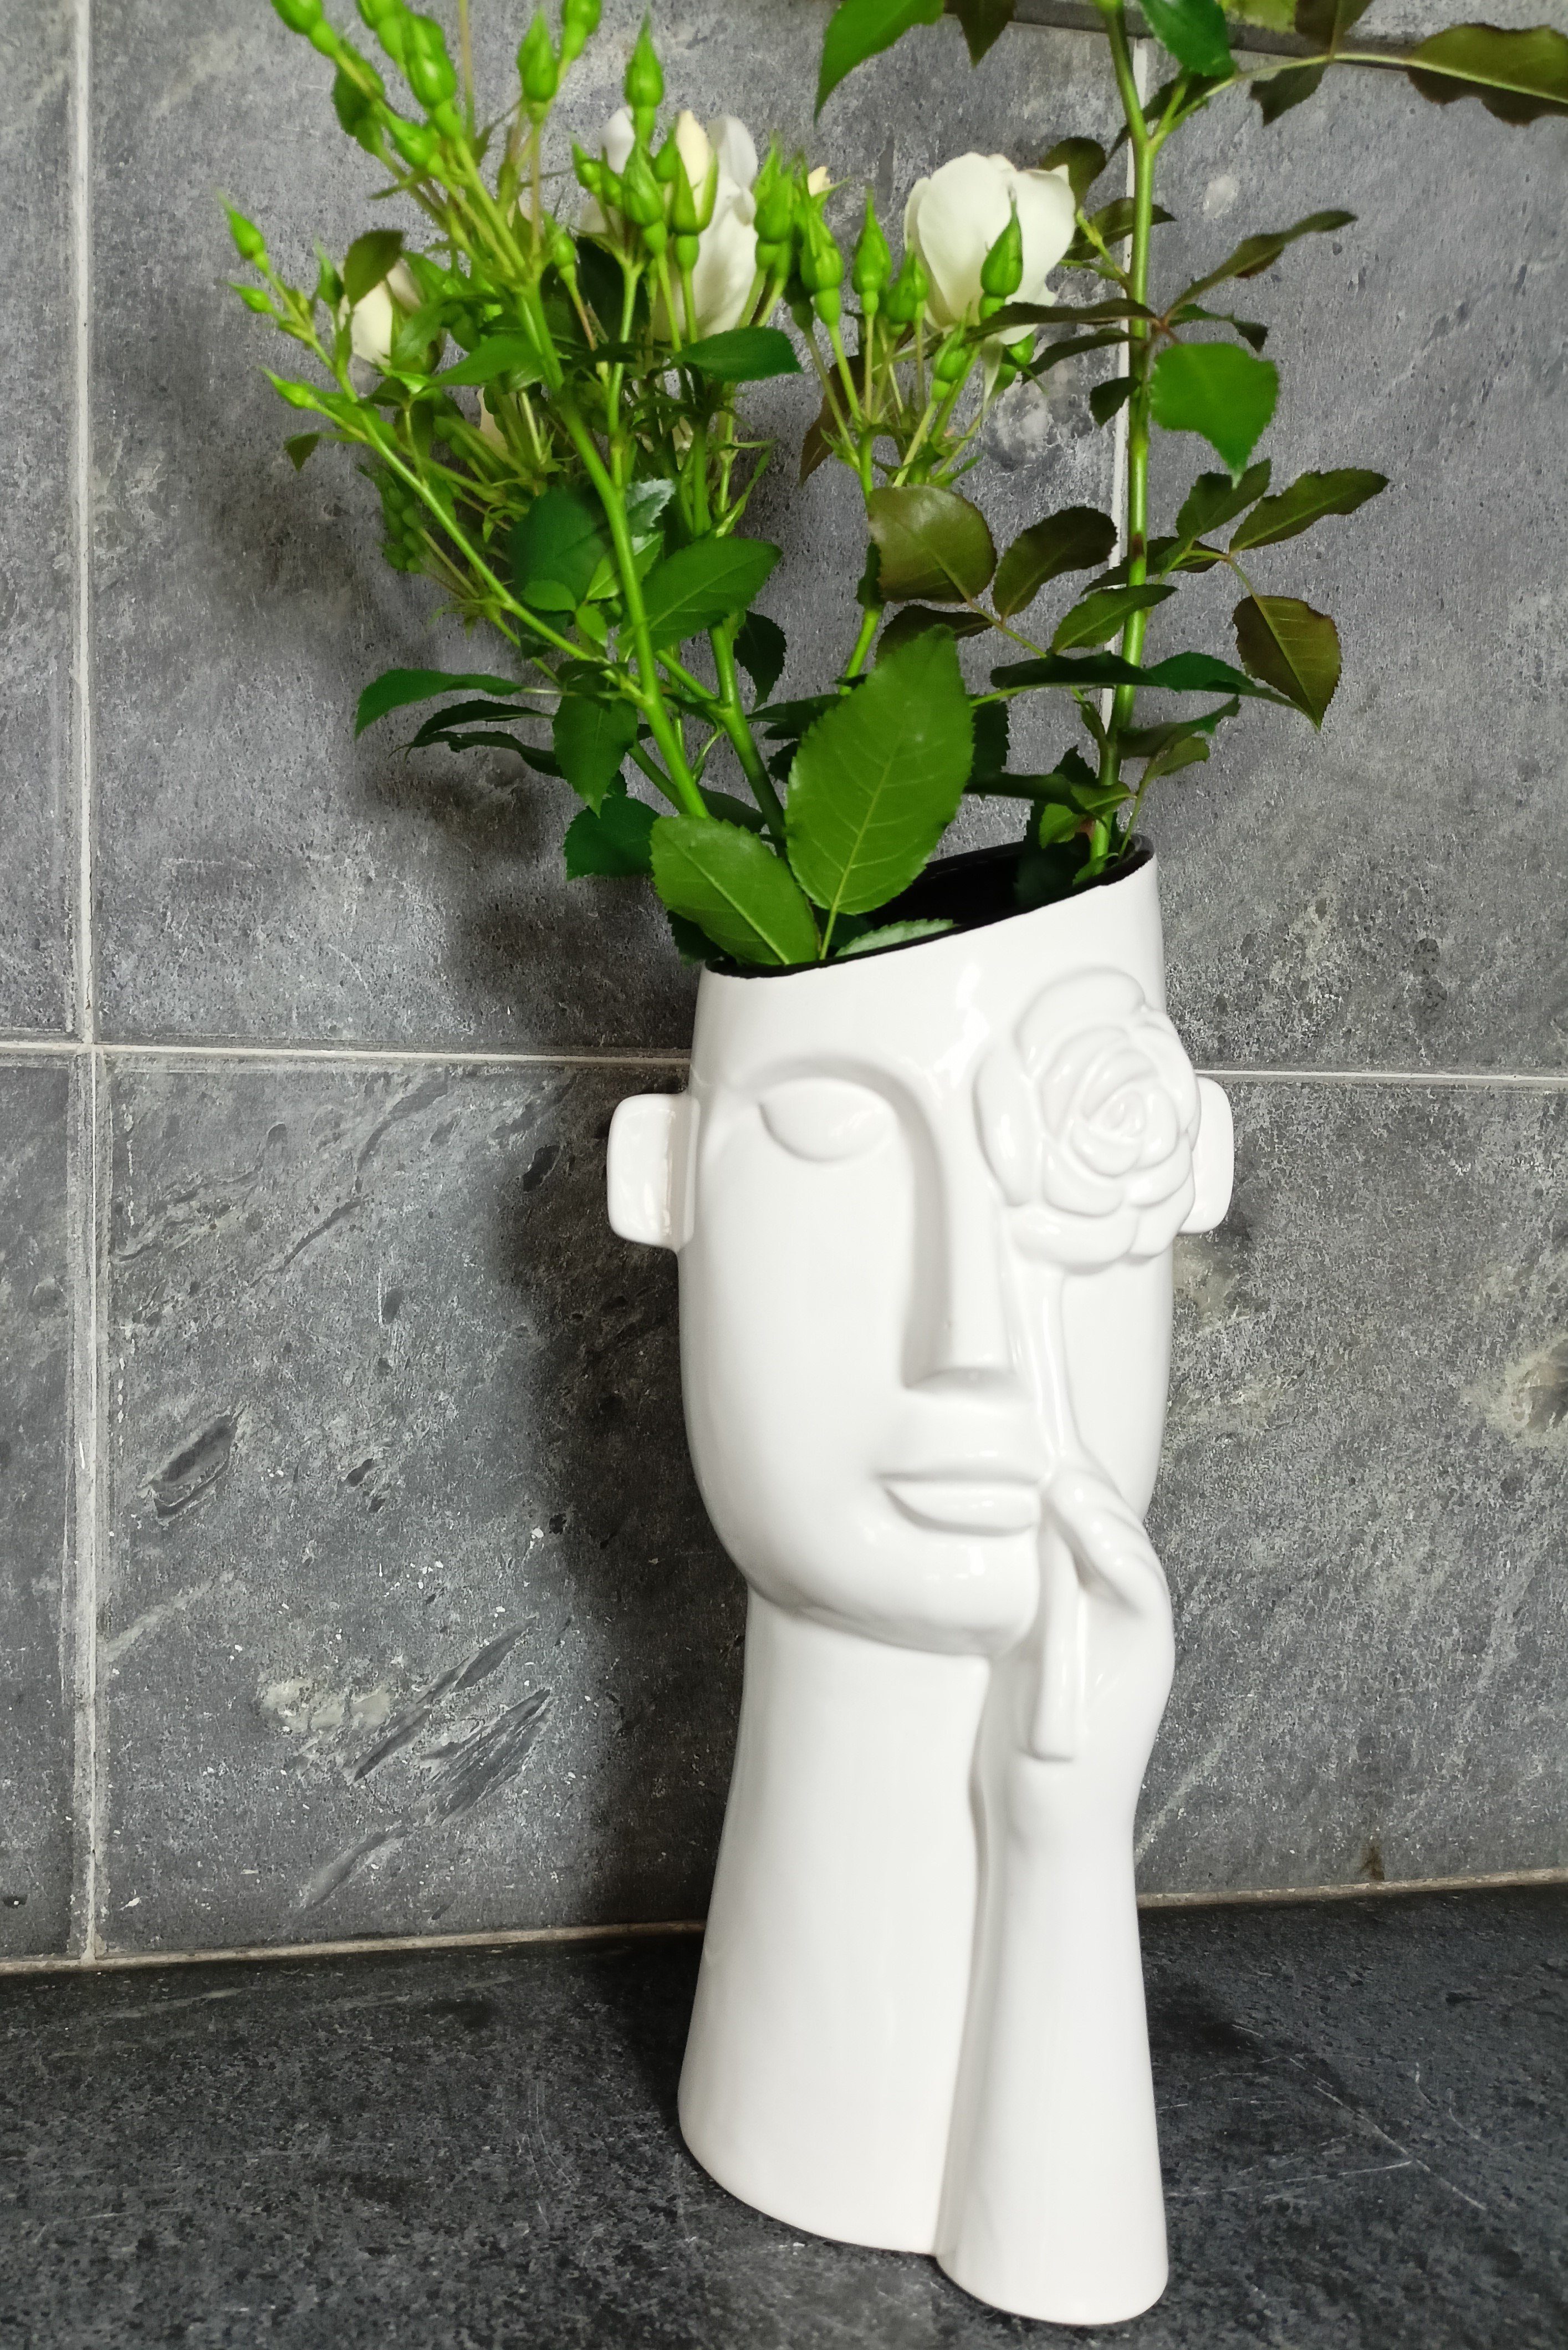 GlasArt Dekovase Keramik-Gesichtsvase Blume Keramik 32x15cm Büste Blumenvase weiße